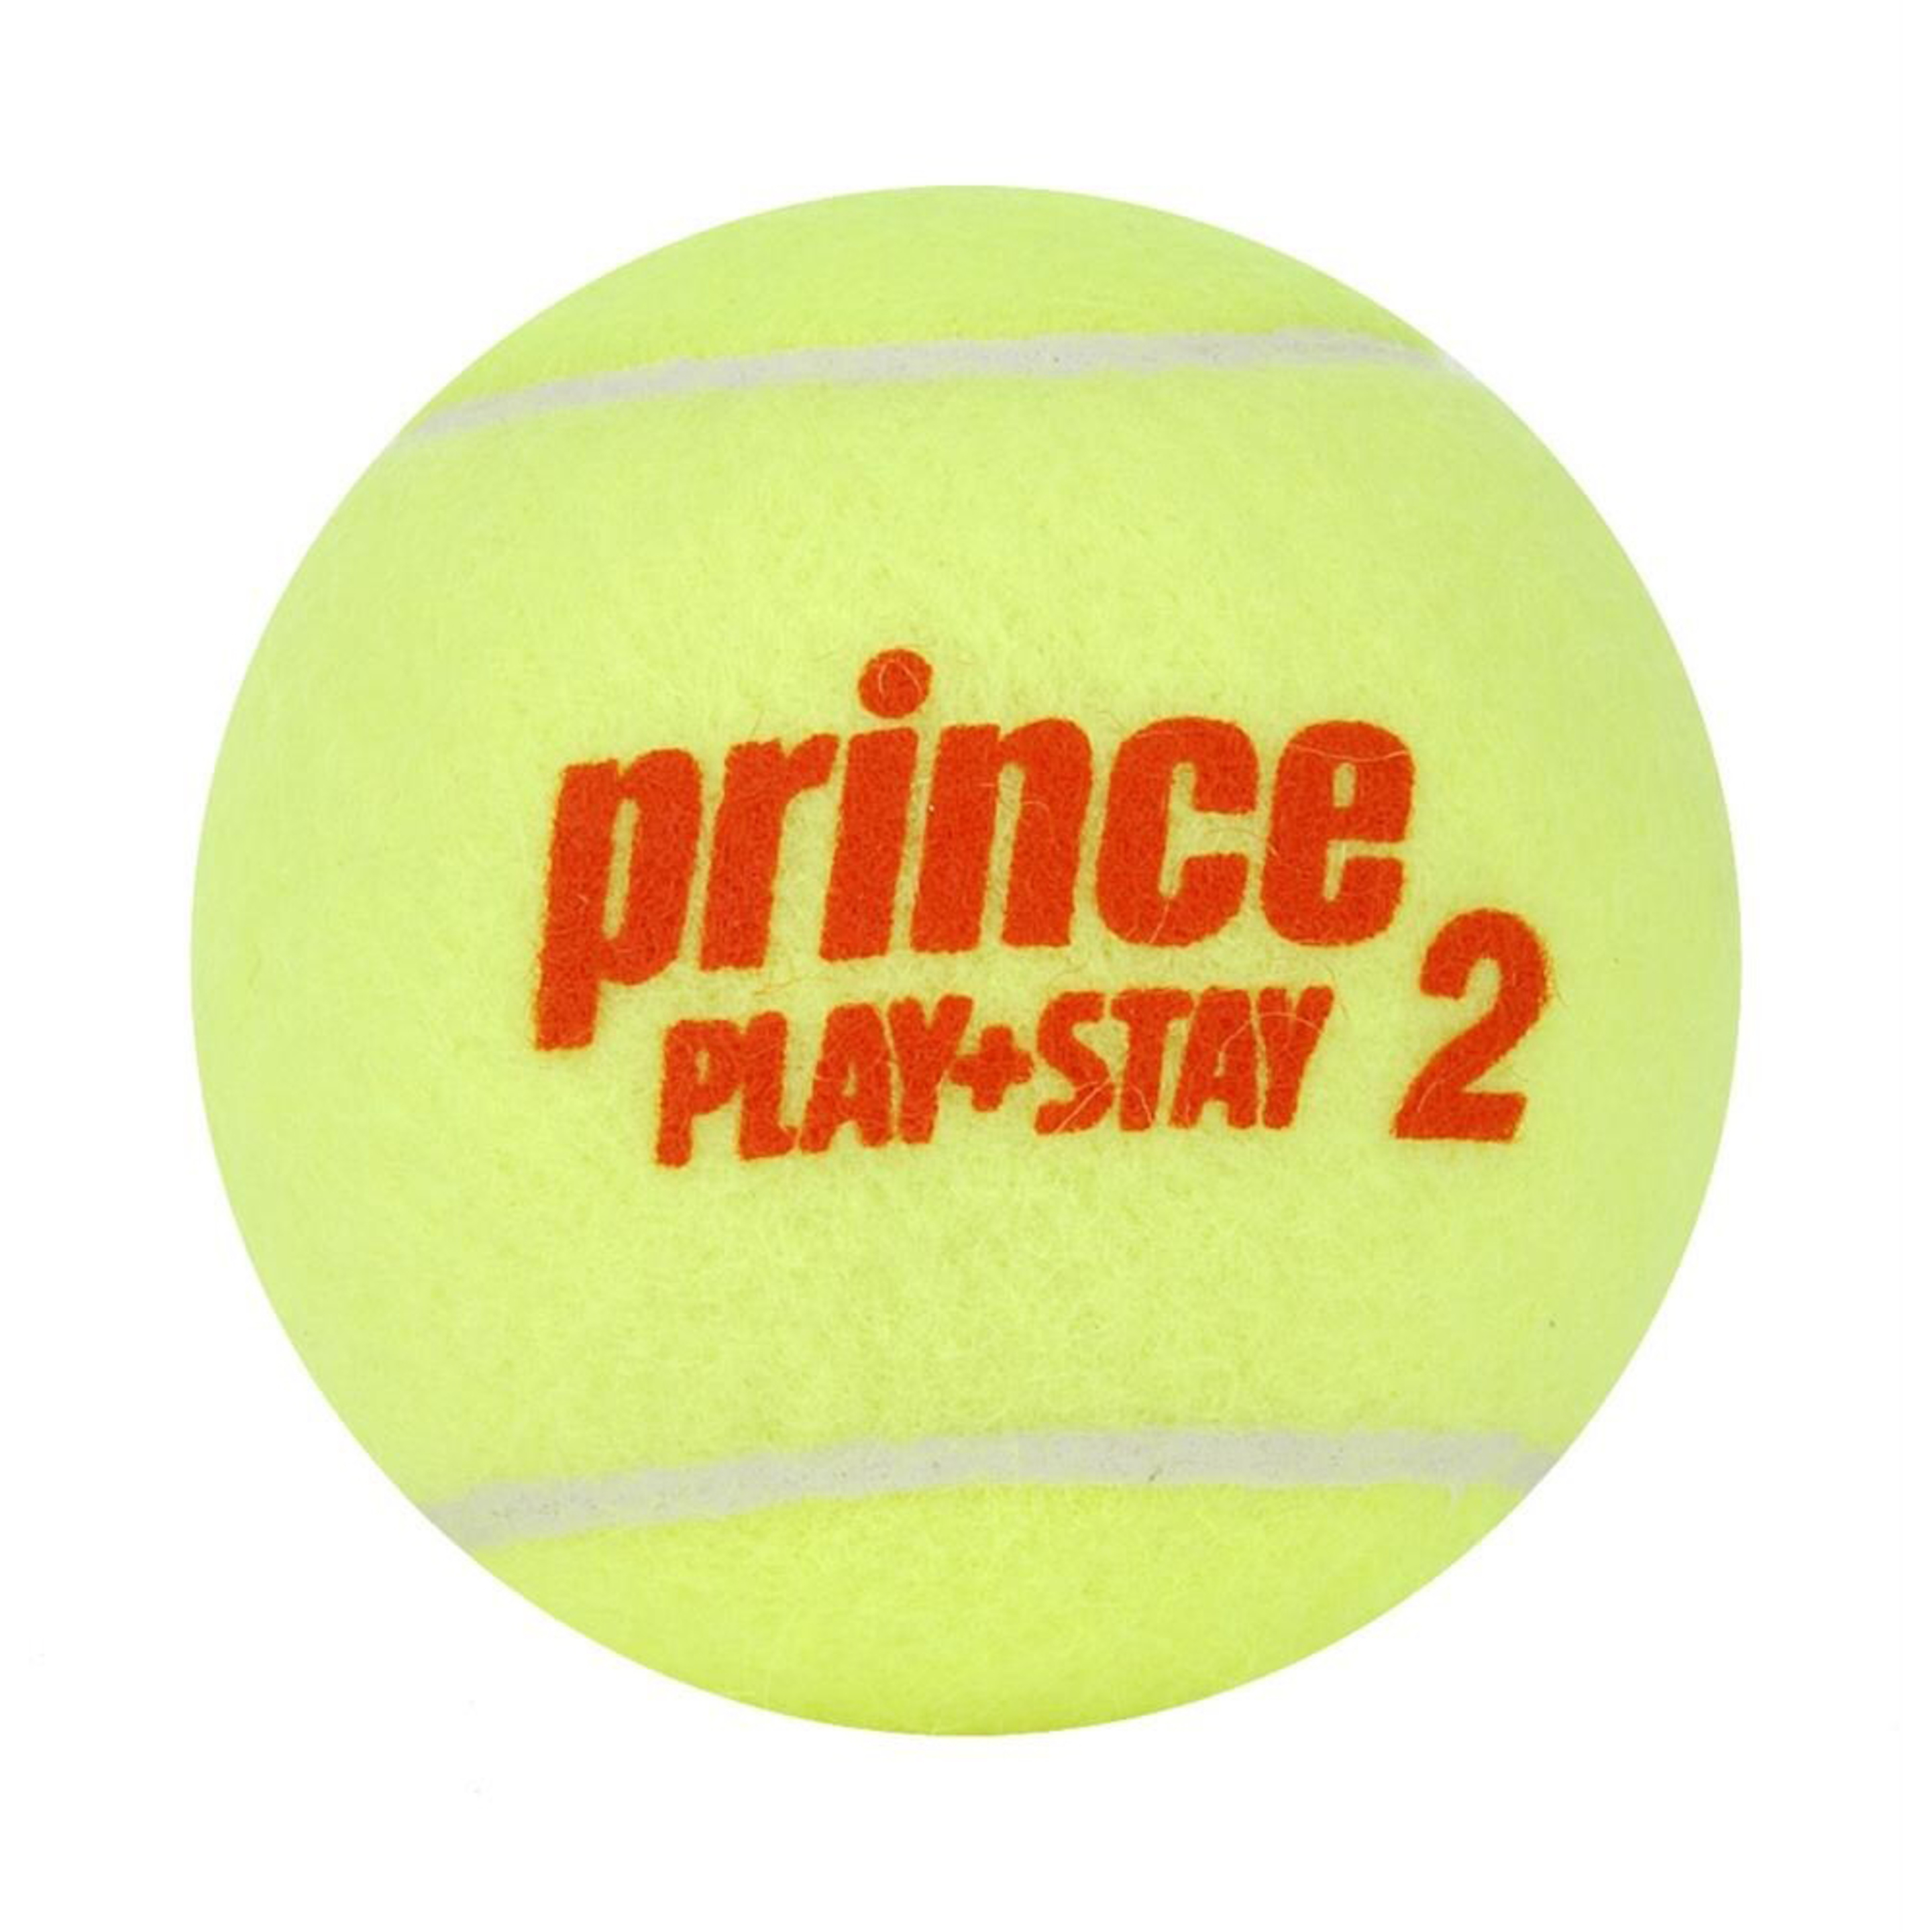 Caja De 24 Botes De 3 Bolas De Tenis Prince Play & Stay Stage 2 - amarillo - 